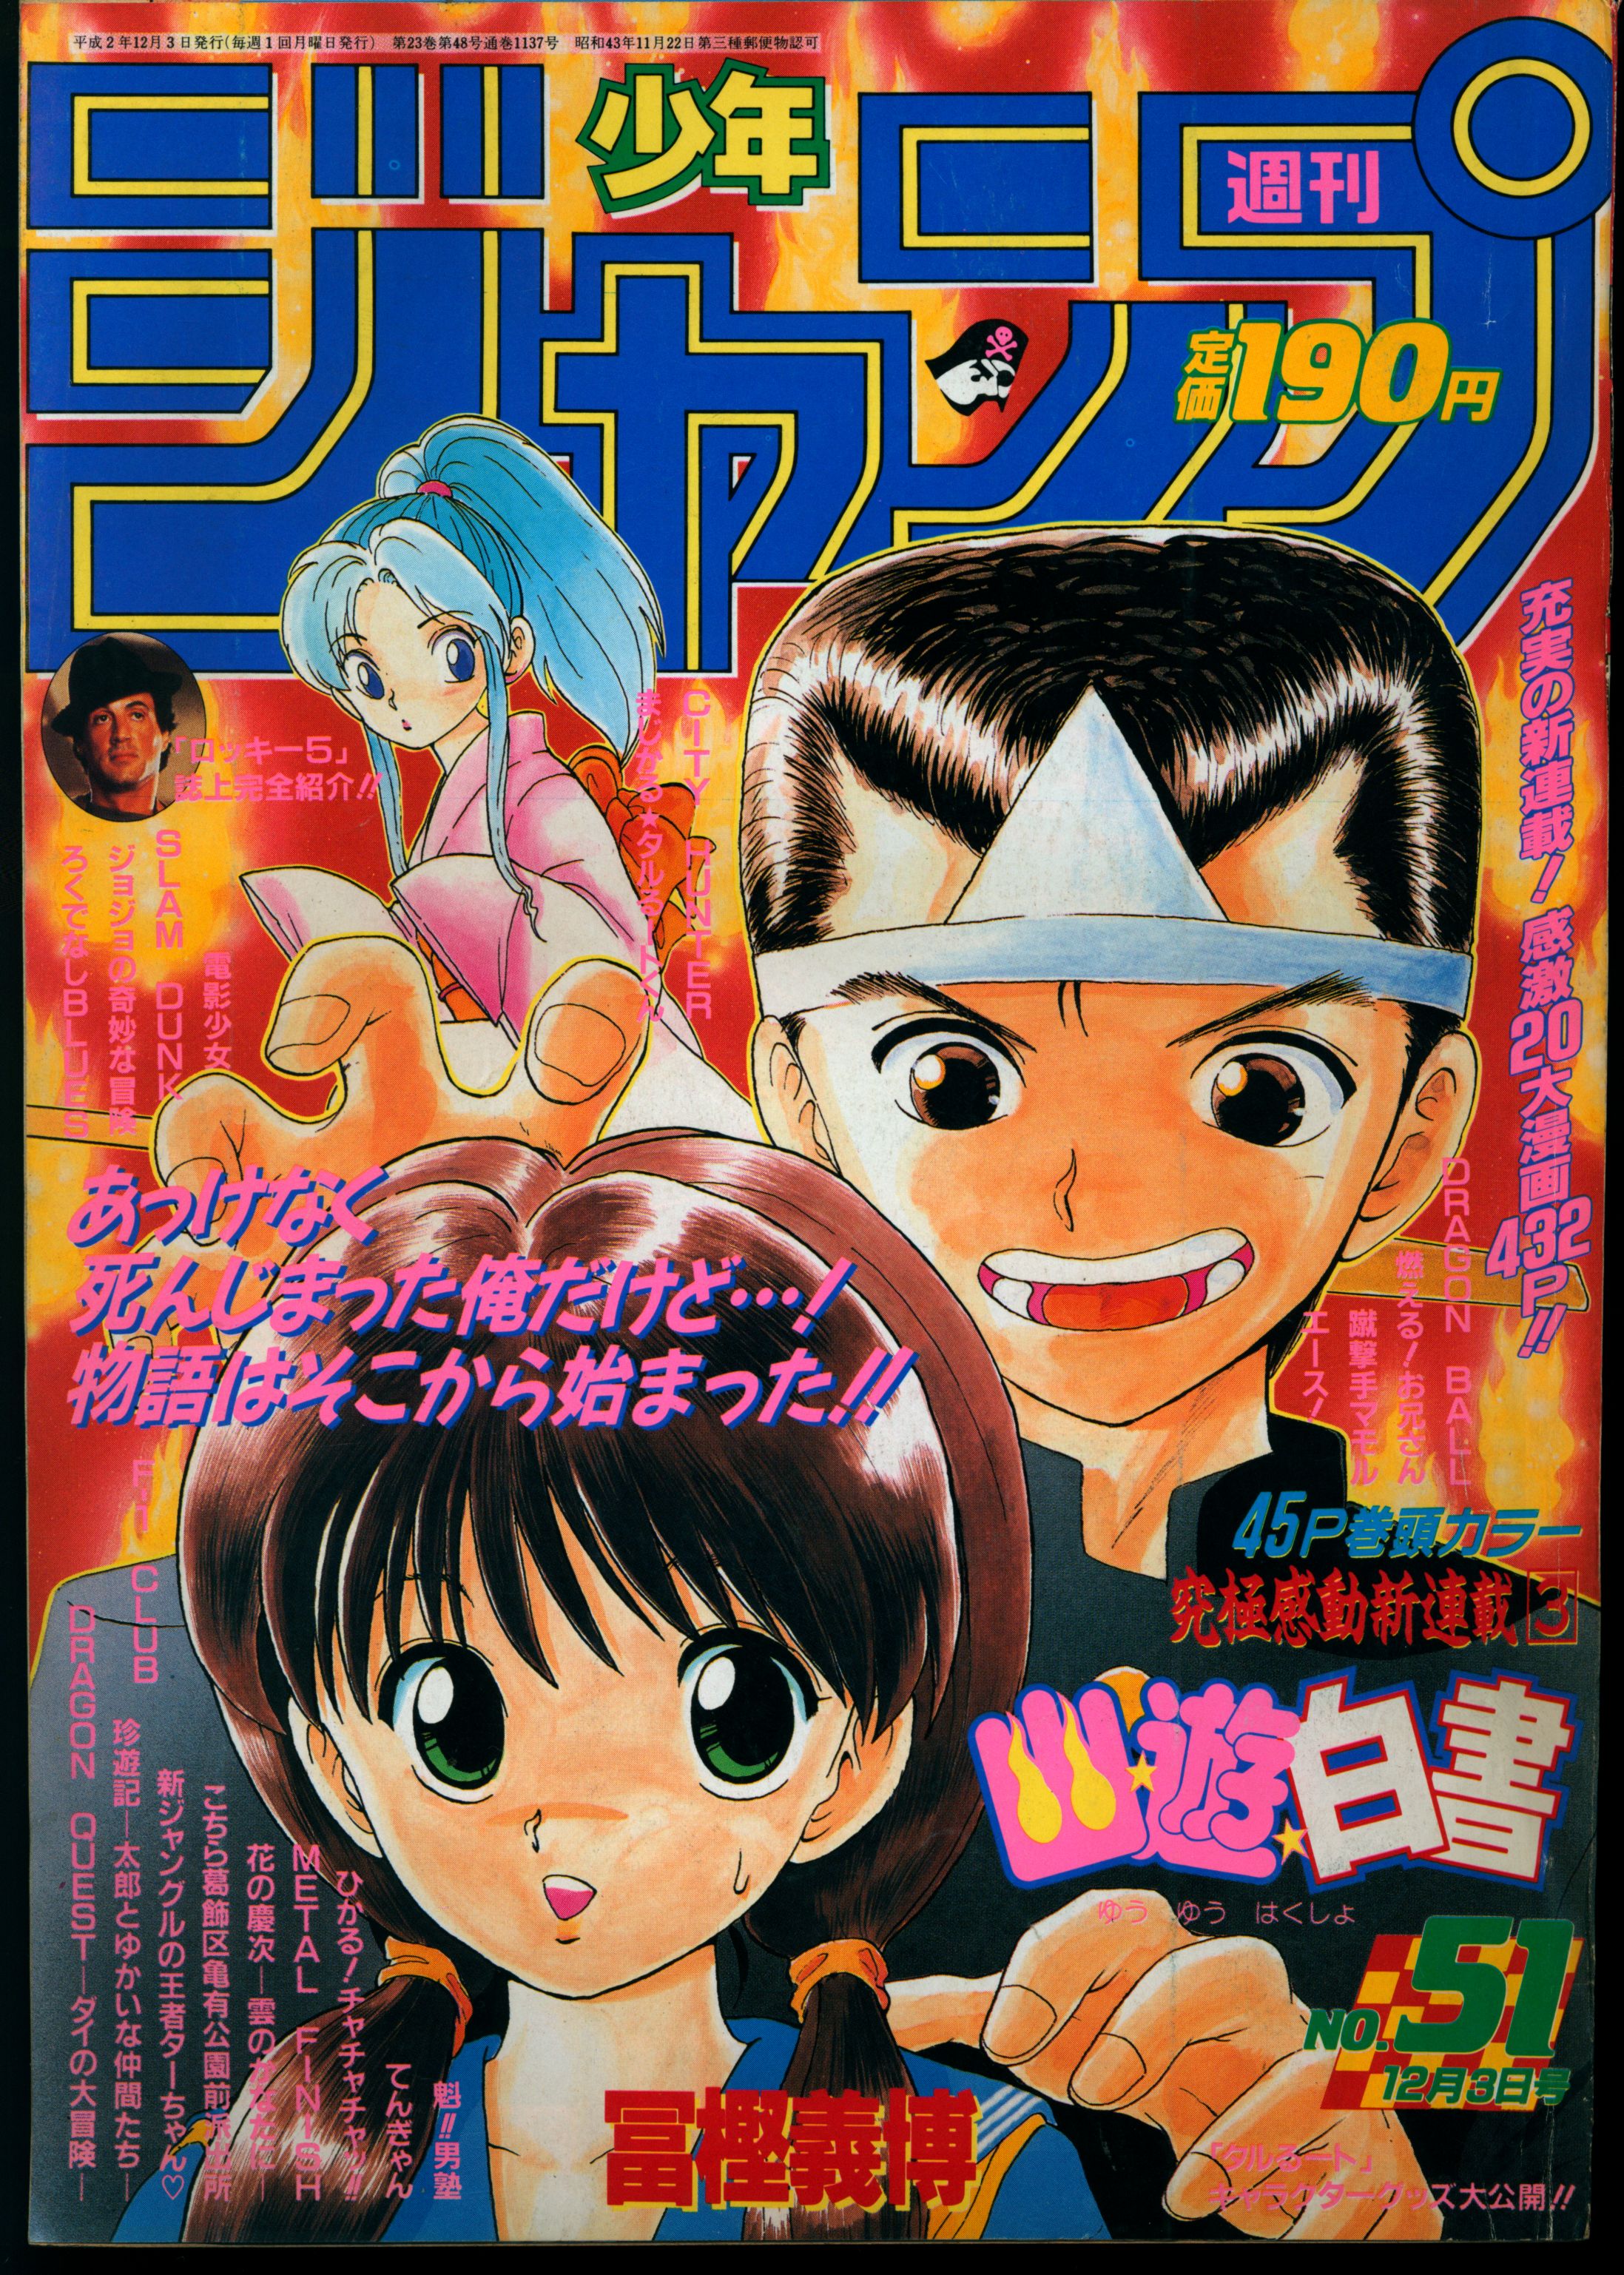 幽遊白書 新連載号 冨樫義博 週刊少年ジャンプ 1990年51号 